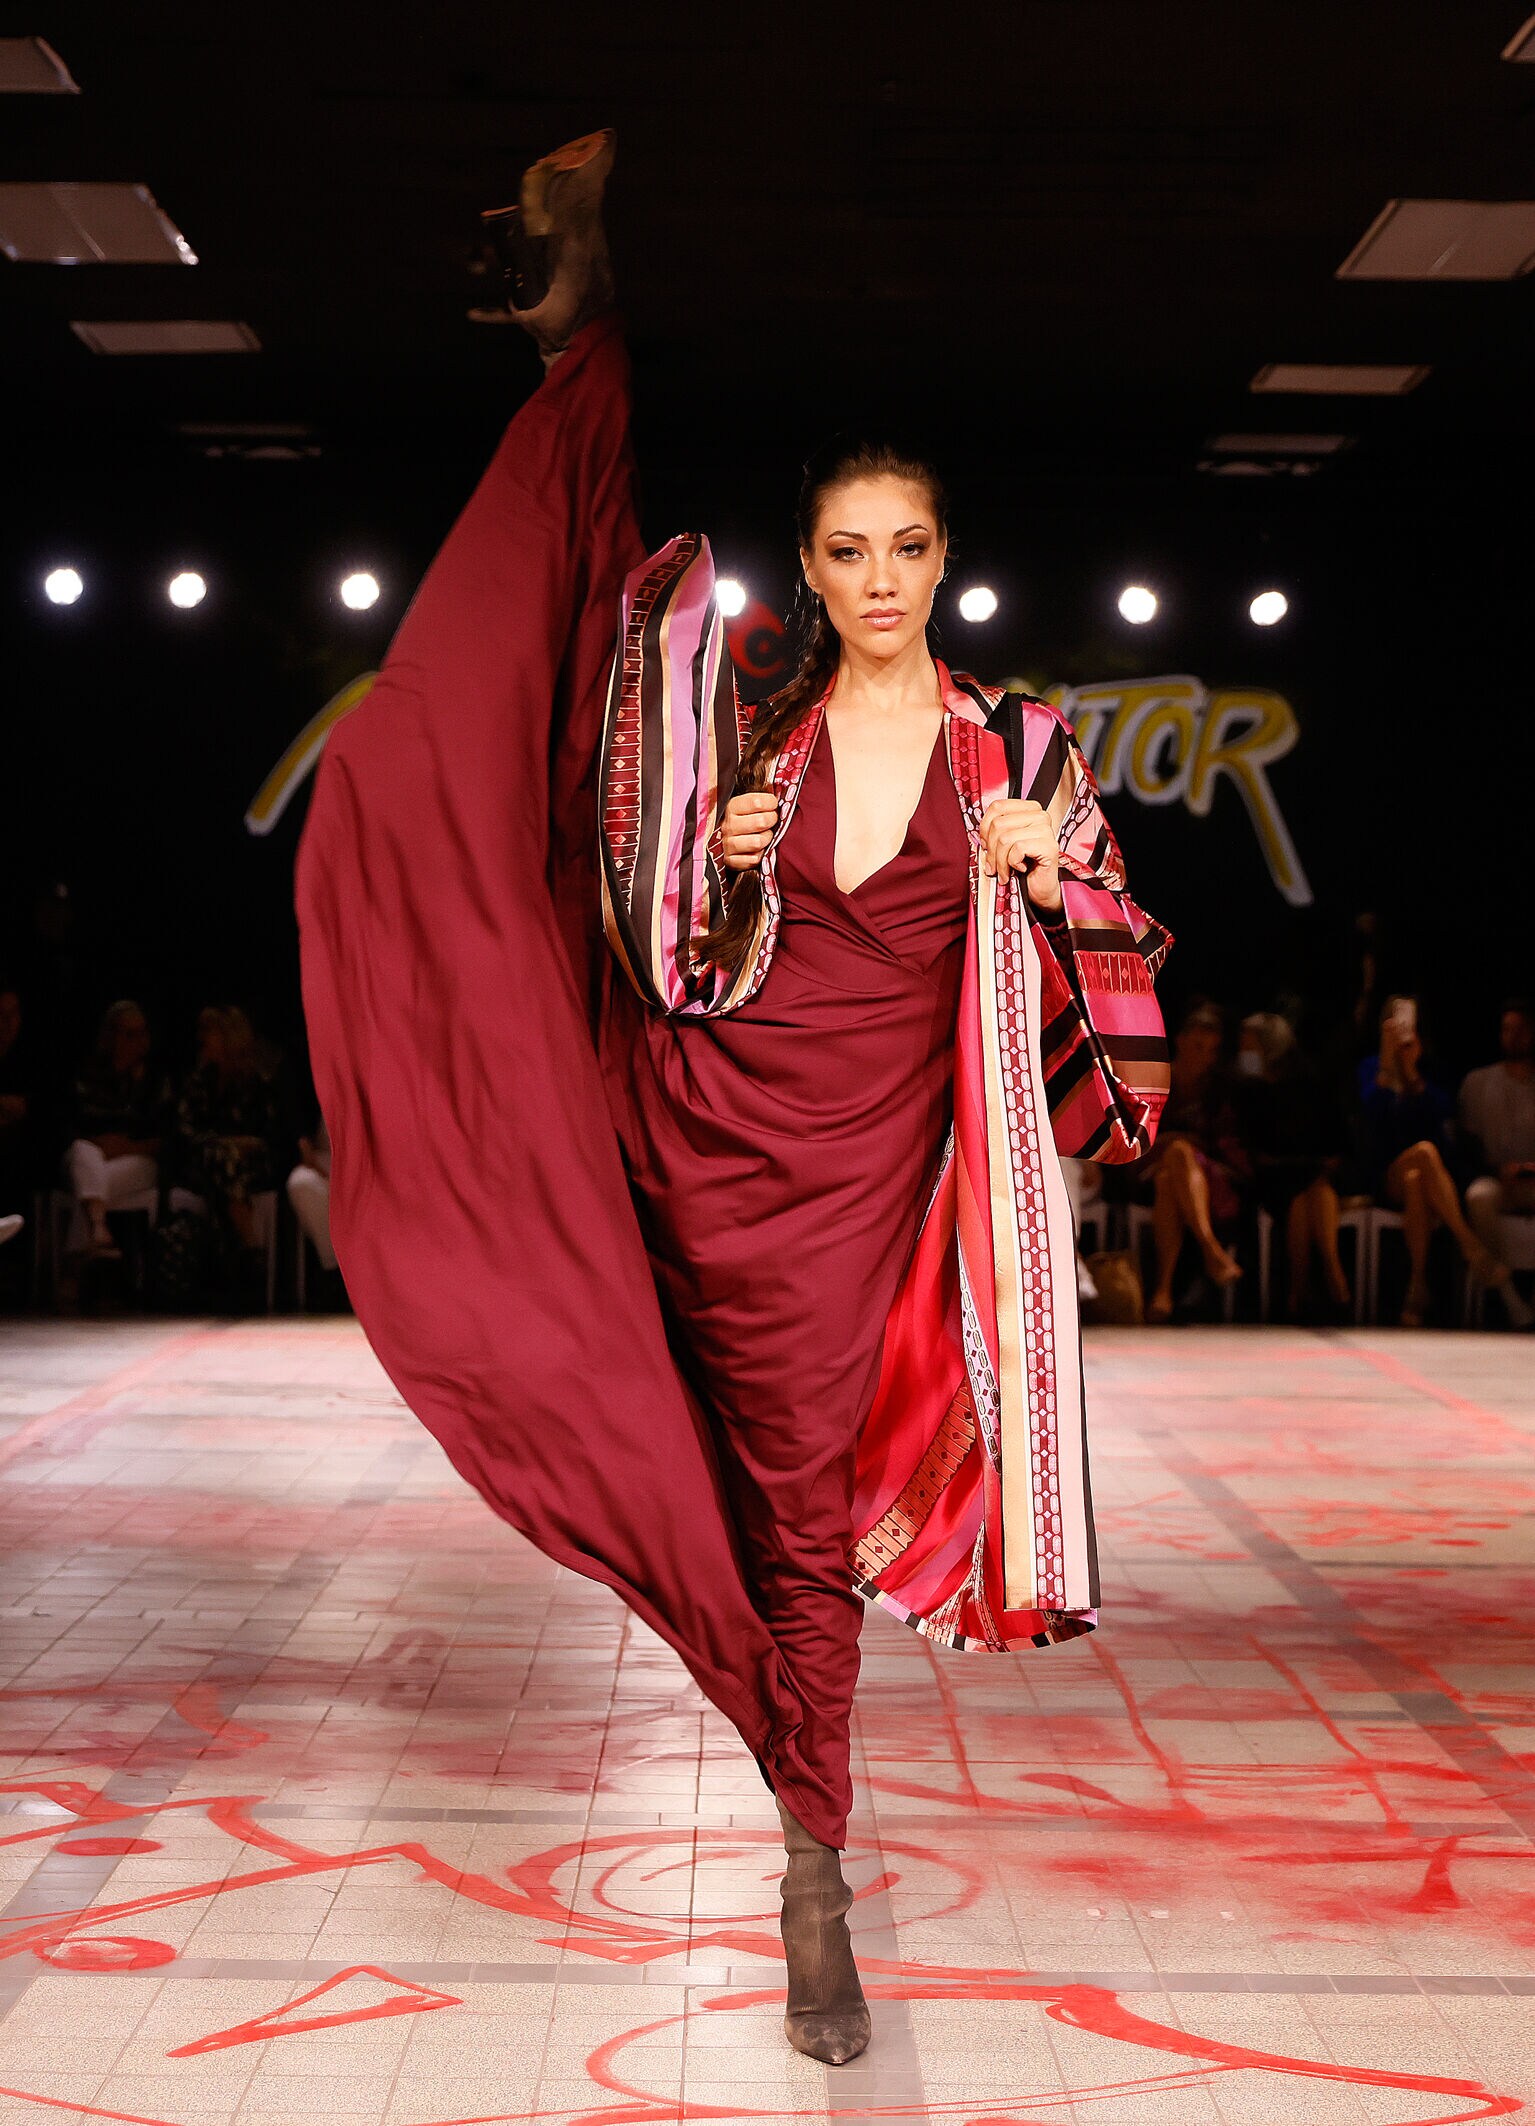 Ein Model in rotem Kleid auf einem Catwalk in spektakulärer Pose